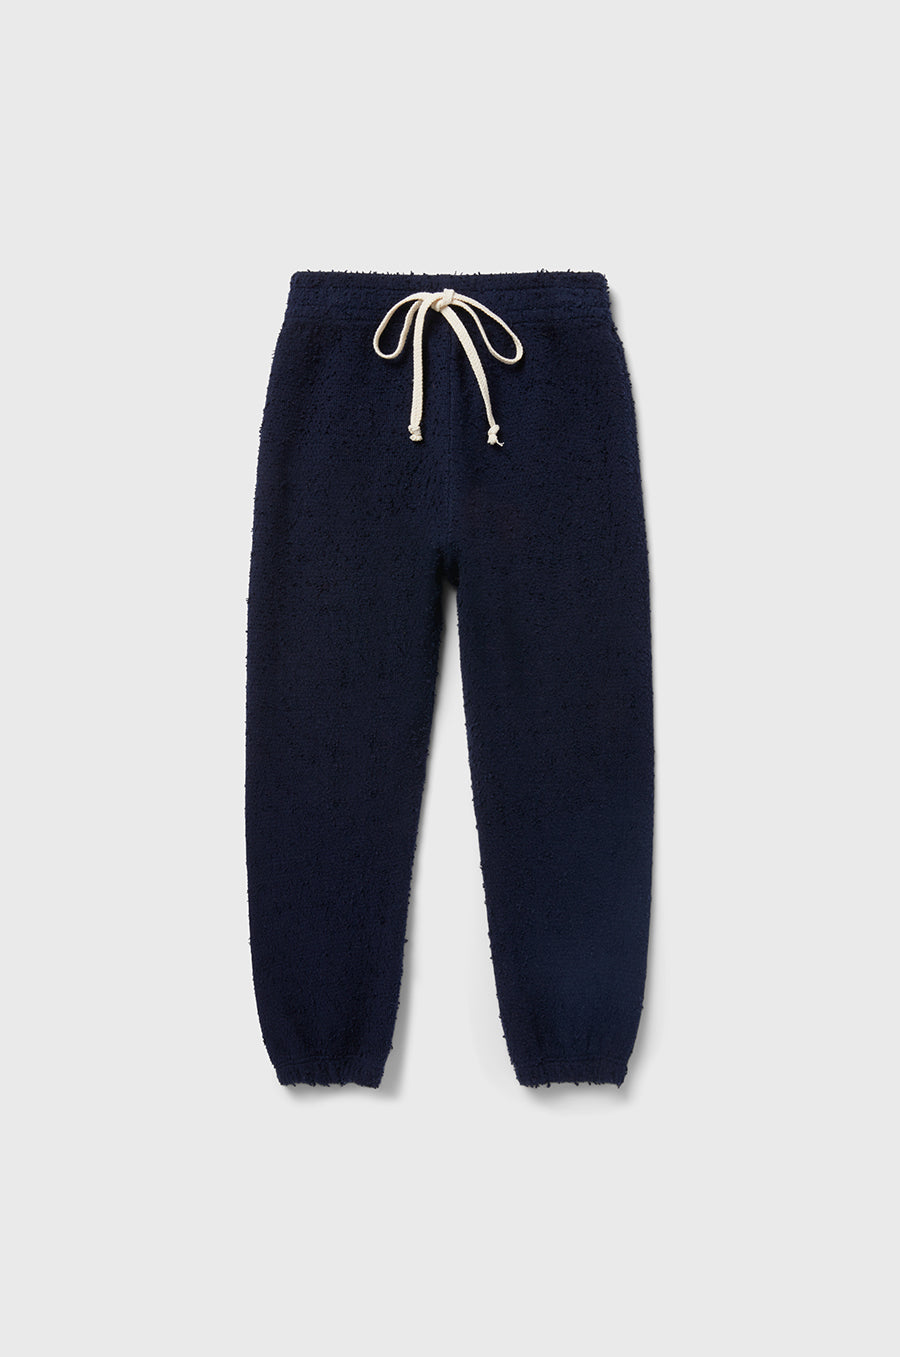 little lady & petit sailor Kids Vintage Sweatpant in Navy Bouclé